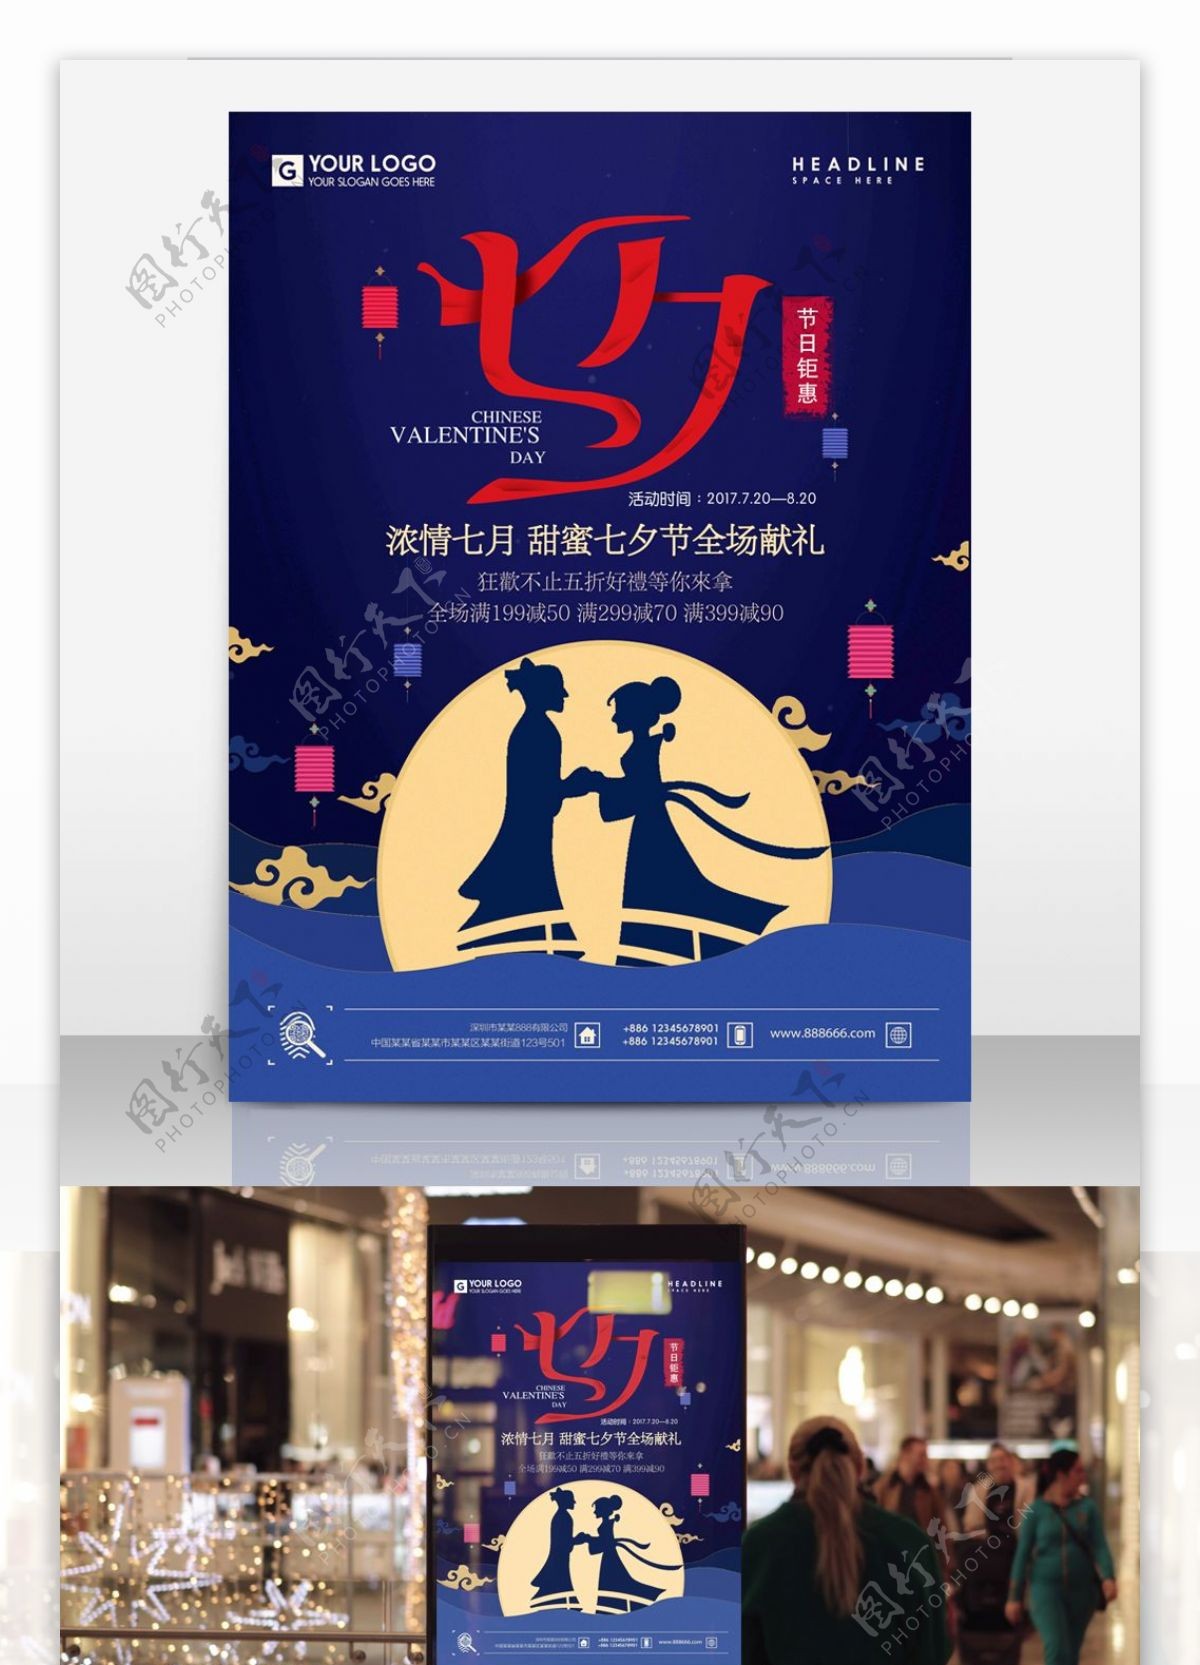 简约大气七夕情人节促销钜惠海报商场商店促销海报设计PSD模板